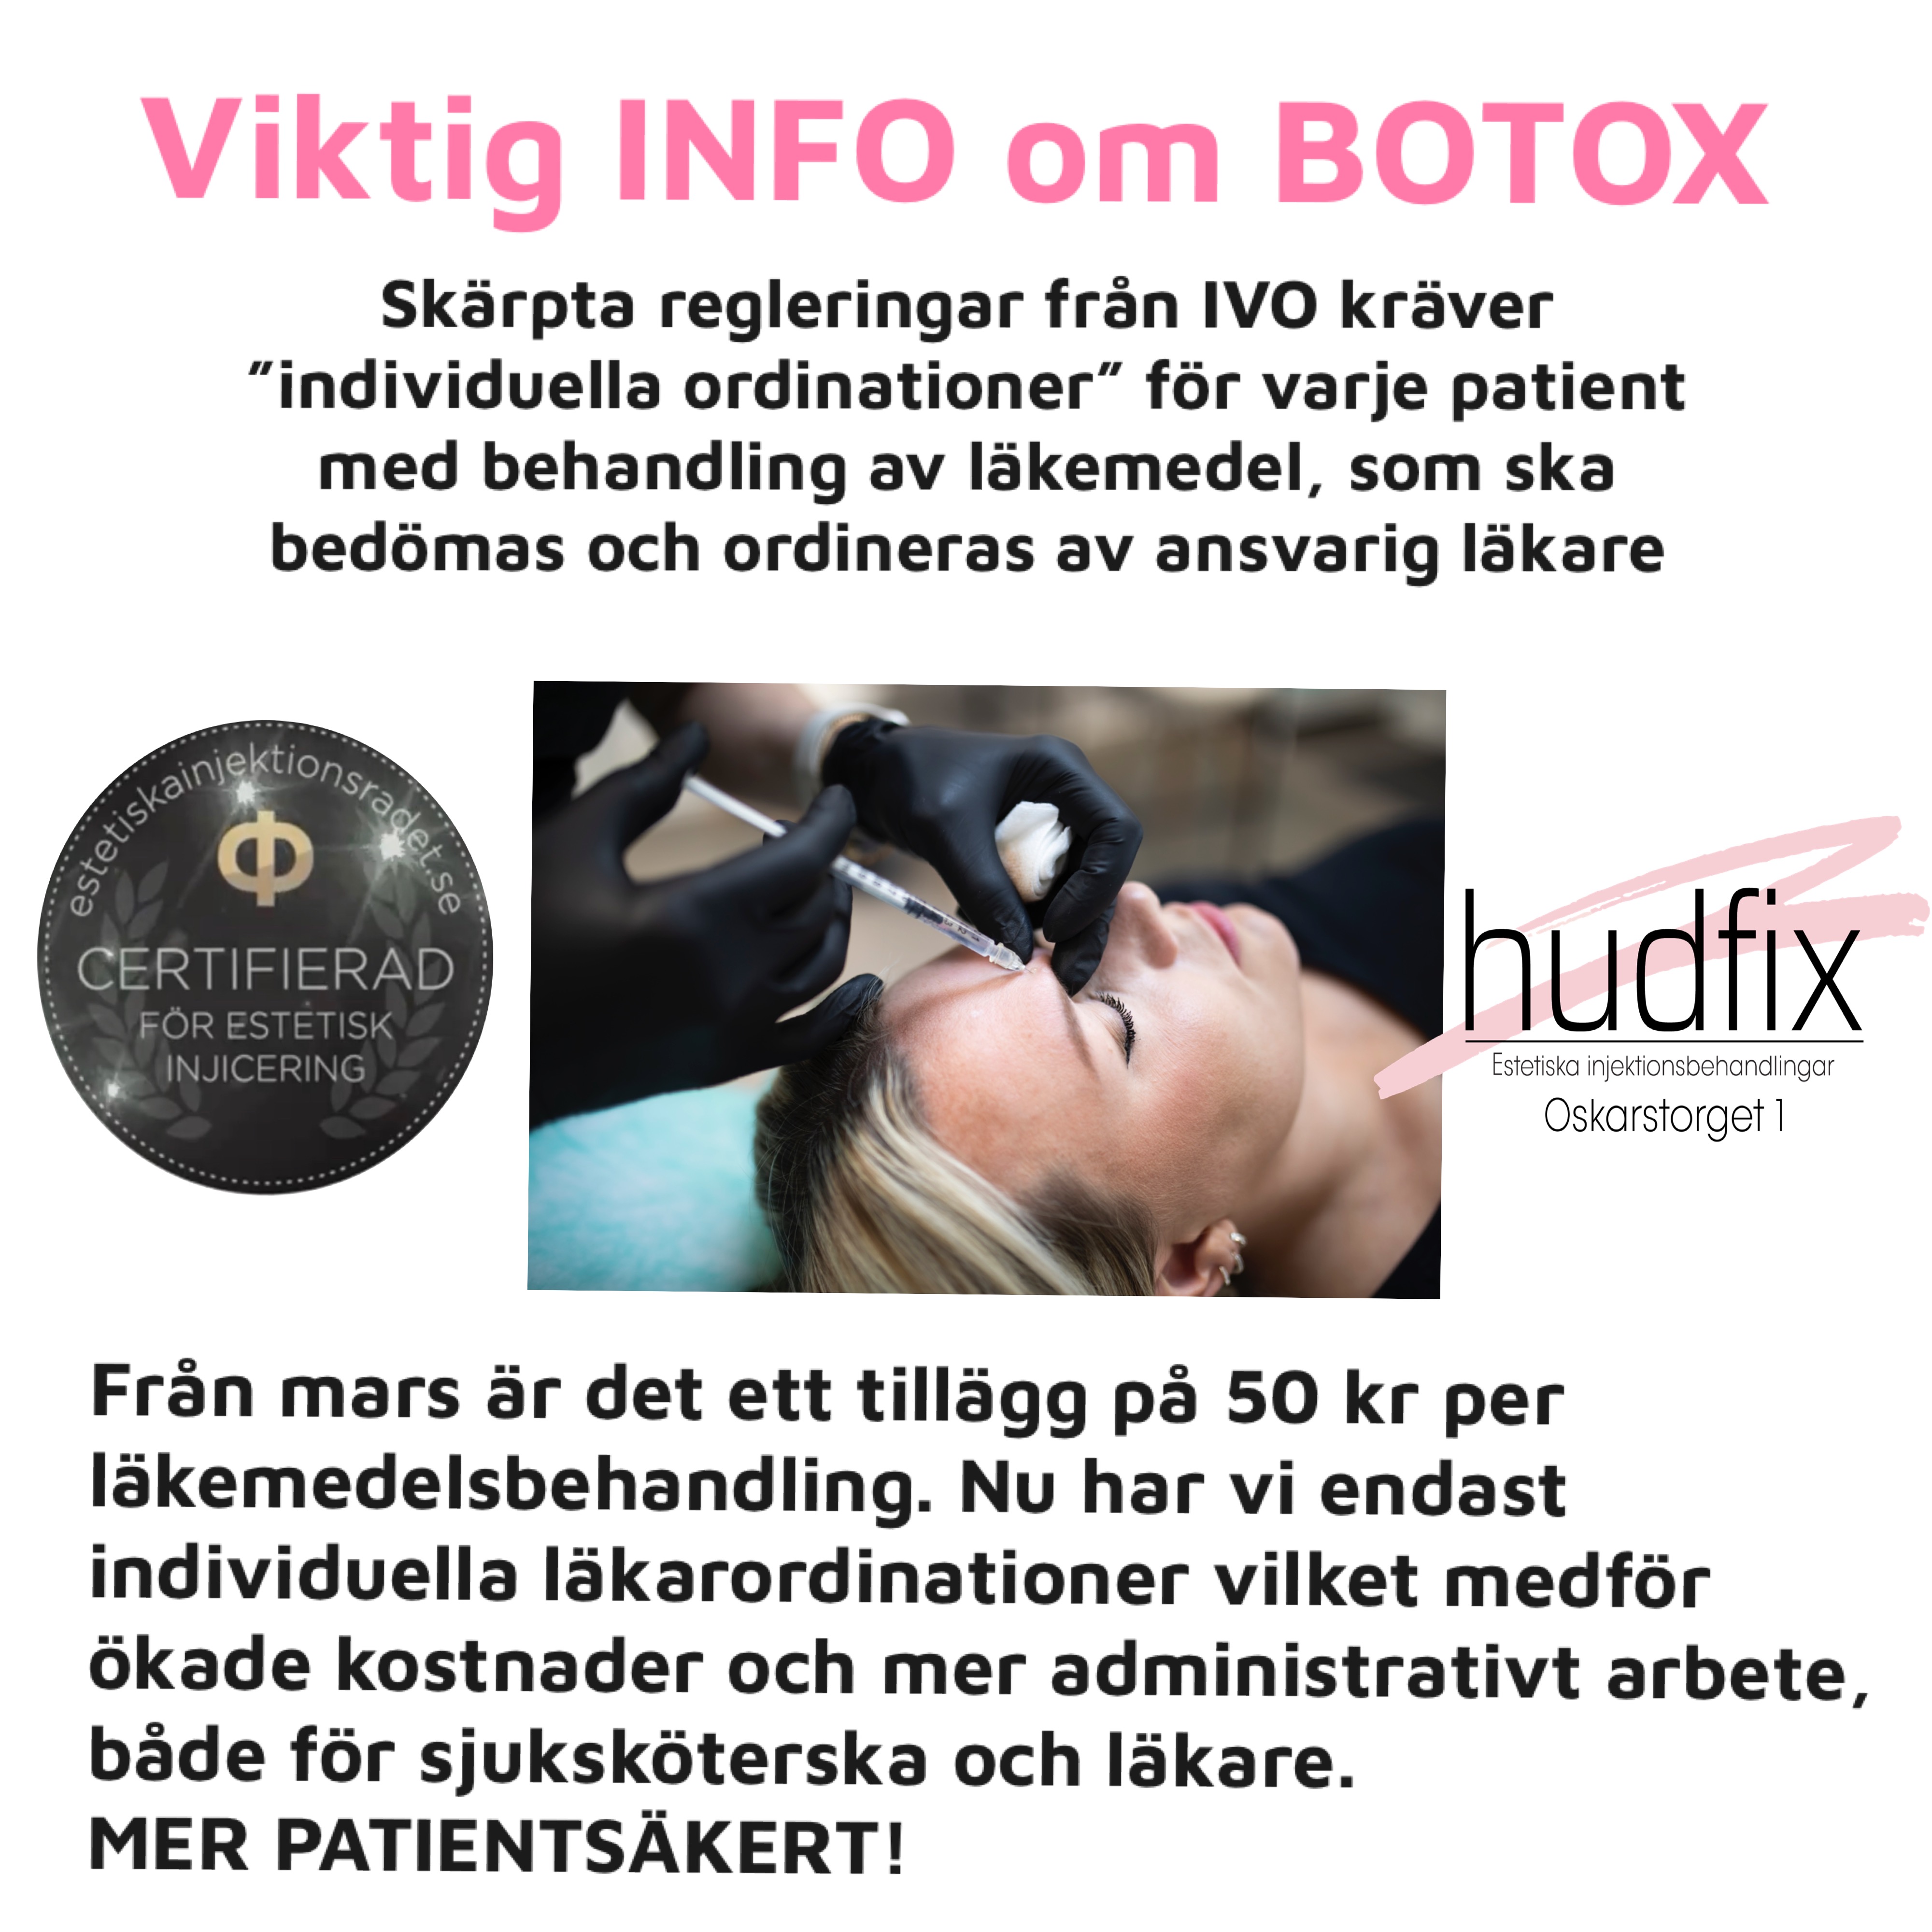 hudfix örebro - Professional skincare treatment in Örebro